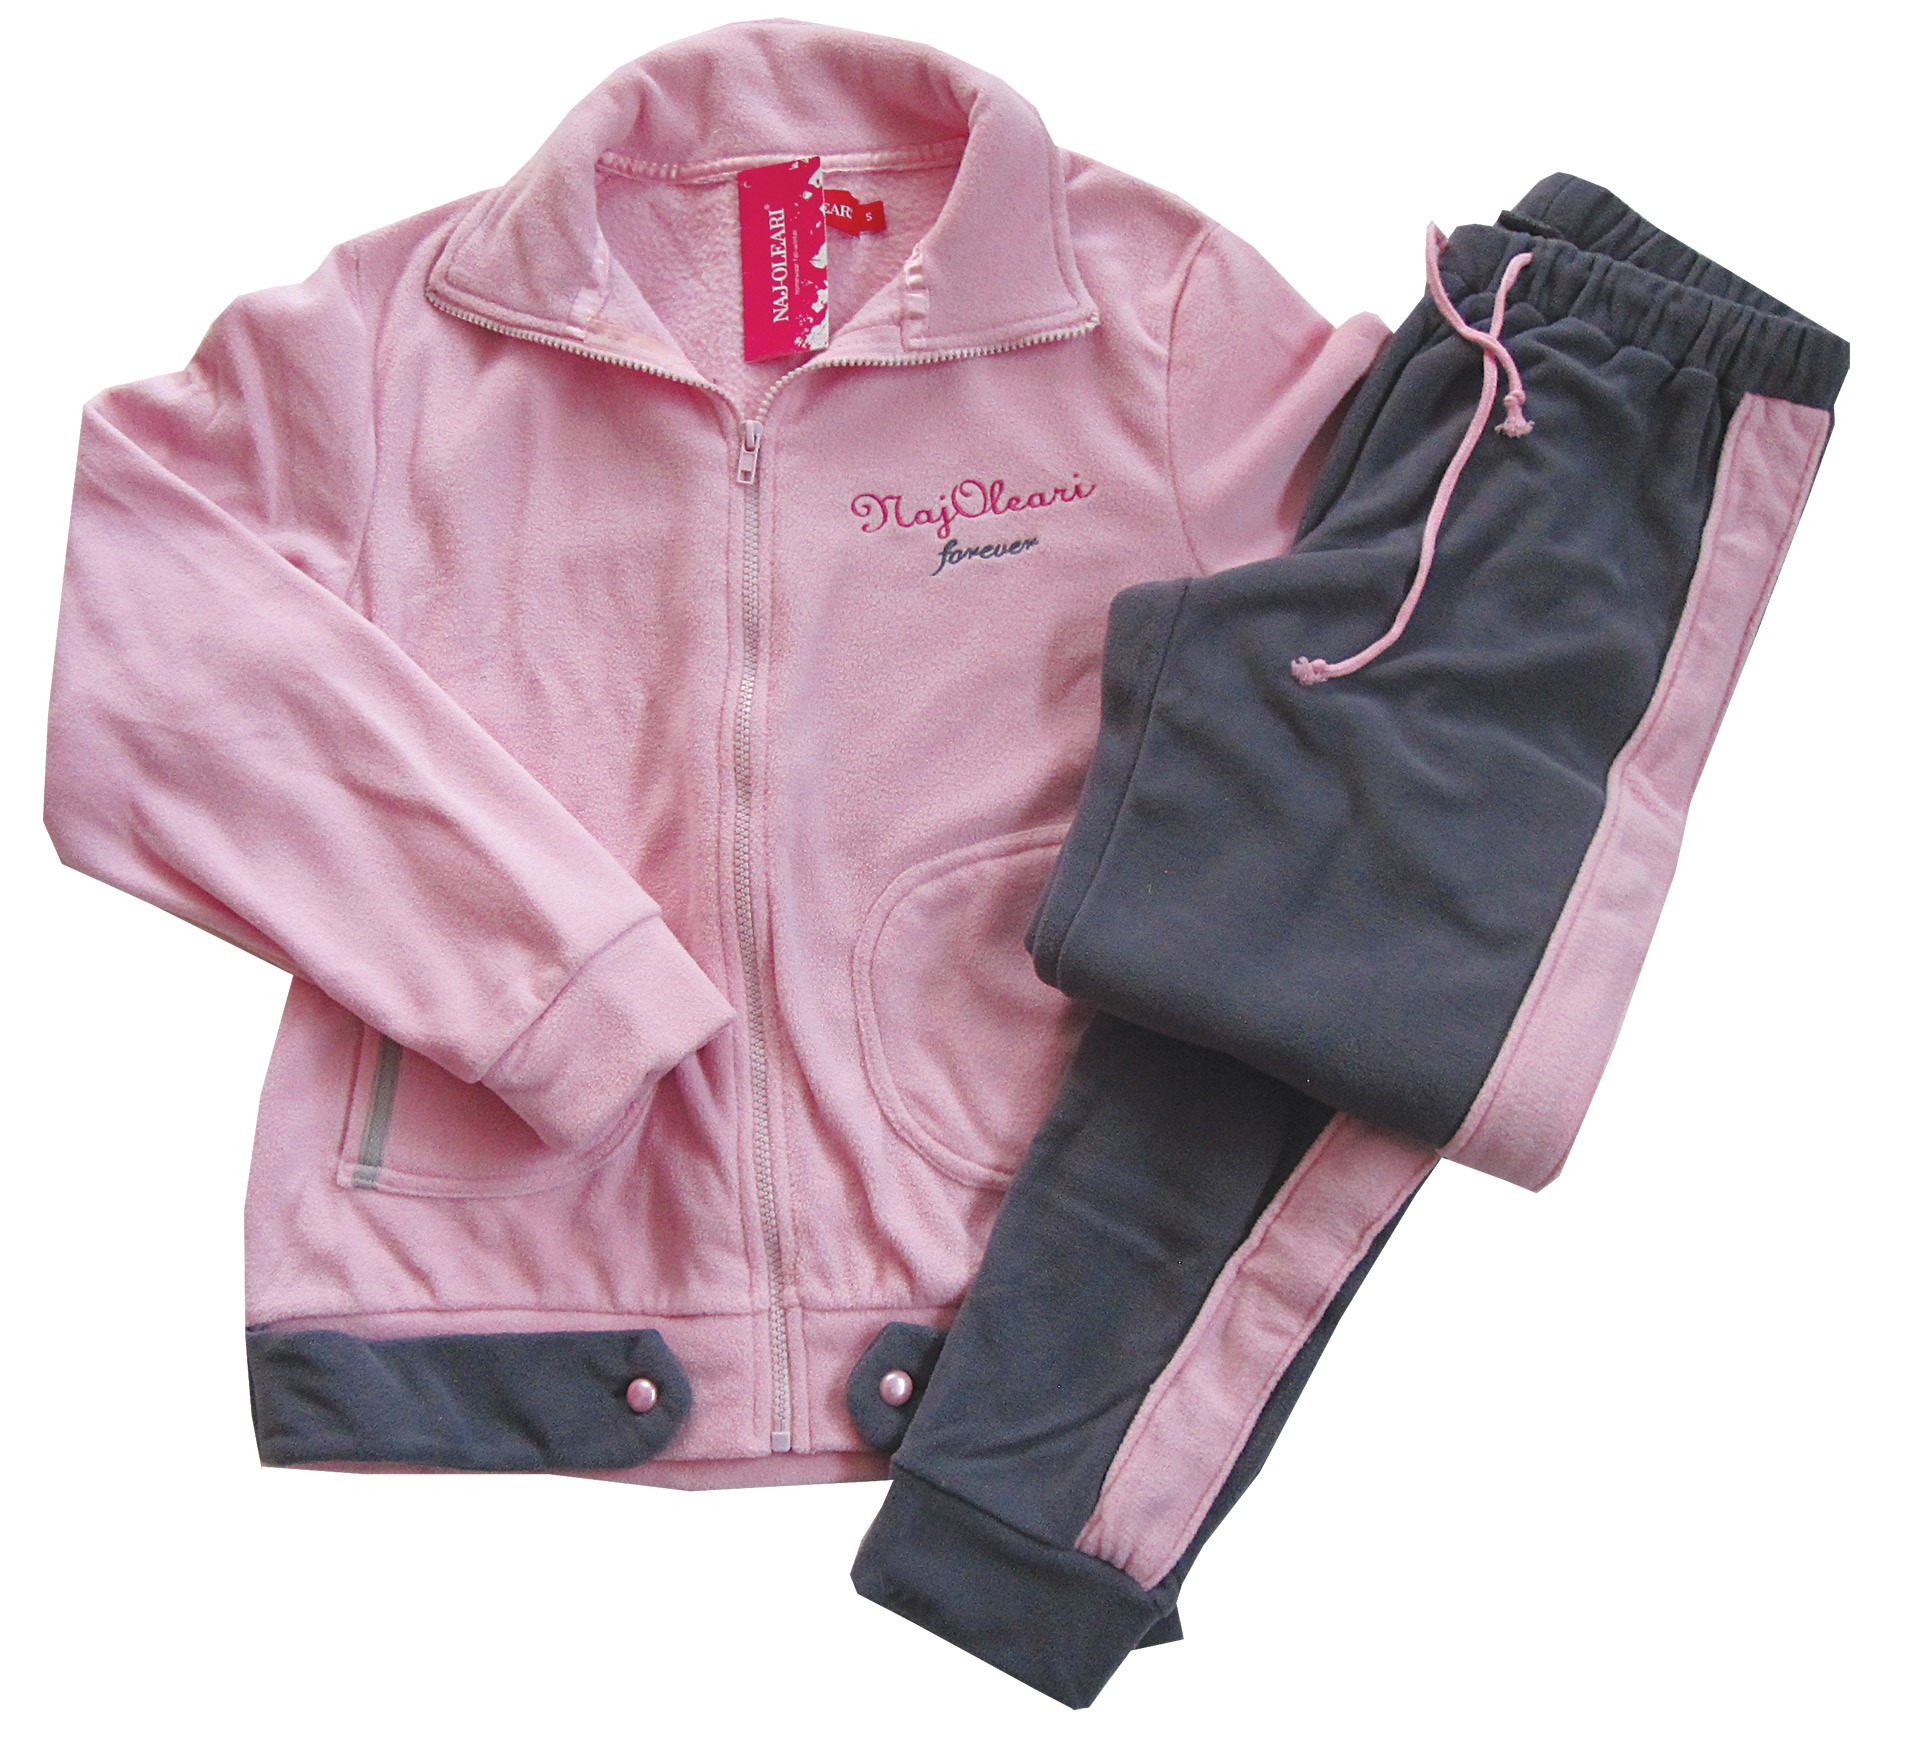 ΕΞΑΝΤΛΗΜΕΝΟ Naj-Oleari fleece ροζ ζακέτα με γκρι παντελόνι κωδ.97